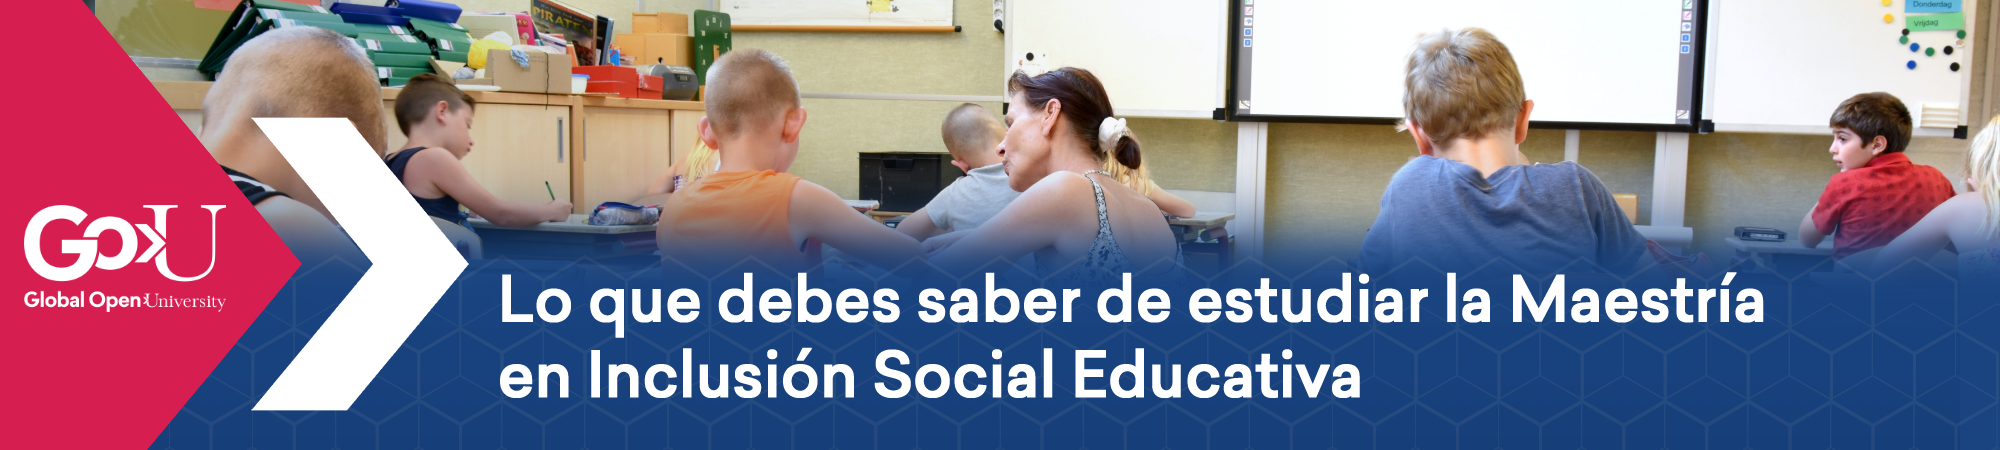 Lo que debes saber de estudiar la Maestría en Inclusión Social Educativa